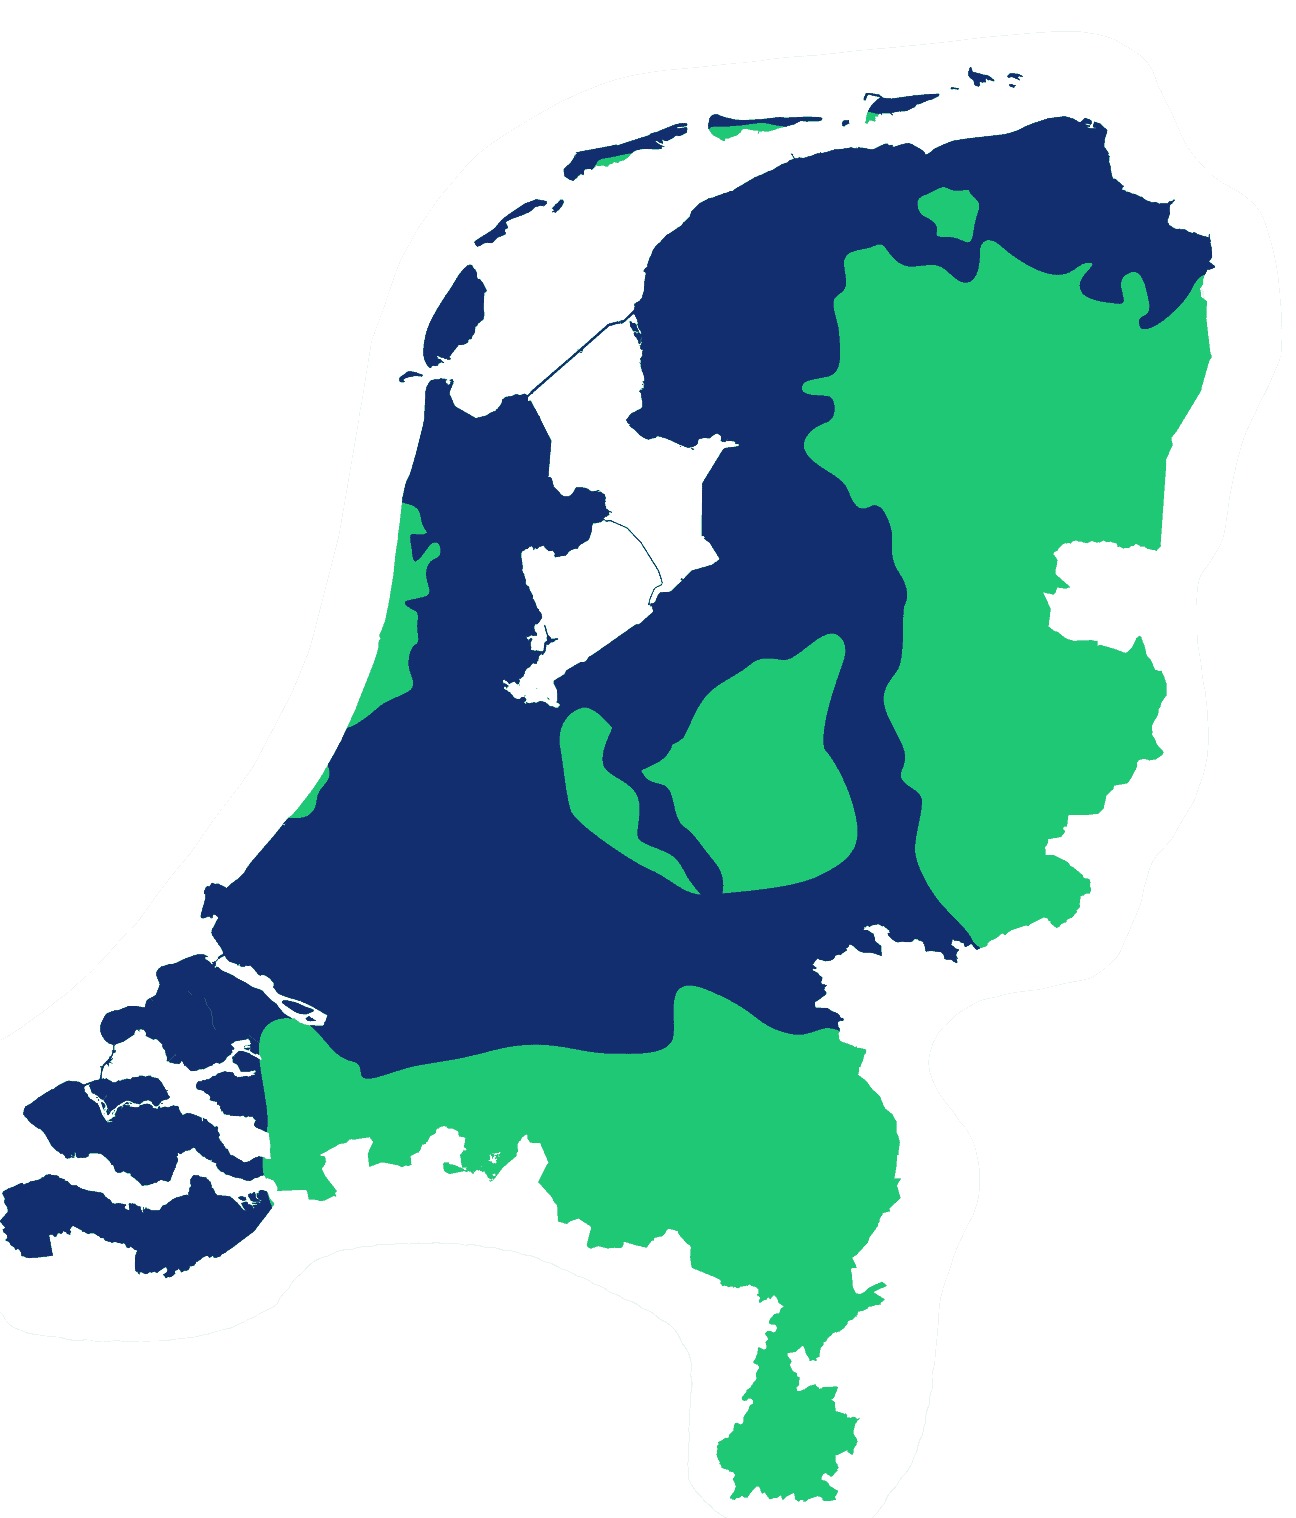 Nederland overstromingsgebied bij dijkdoorbraak